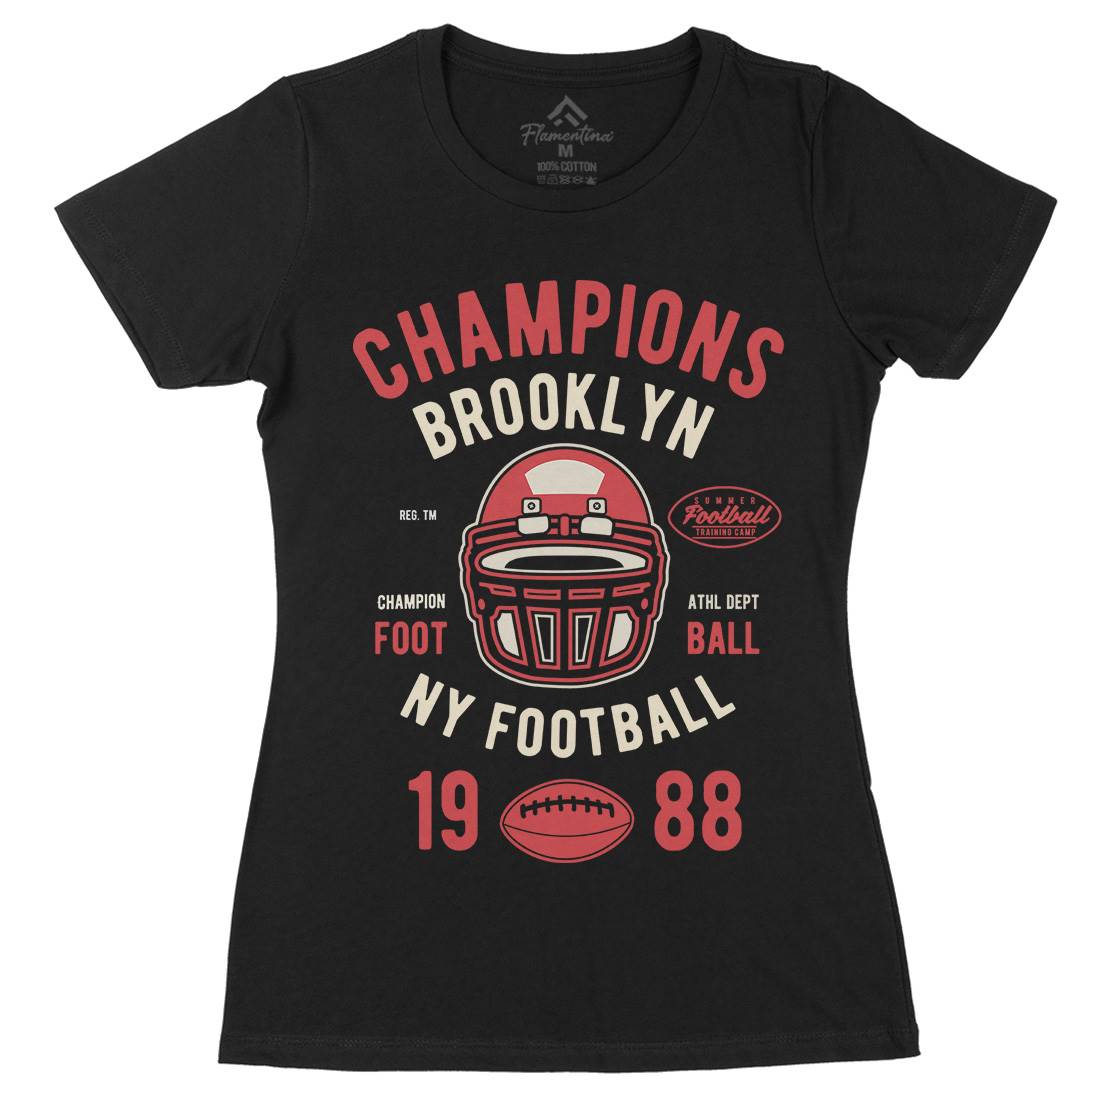 Champion Brooklyn Football Womens Organic Crew Neck T-Shirt Sport B394